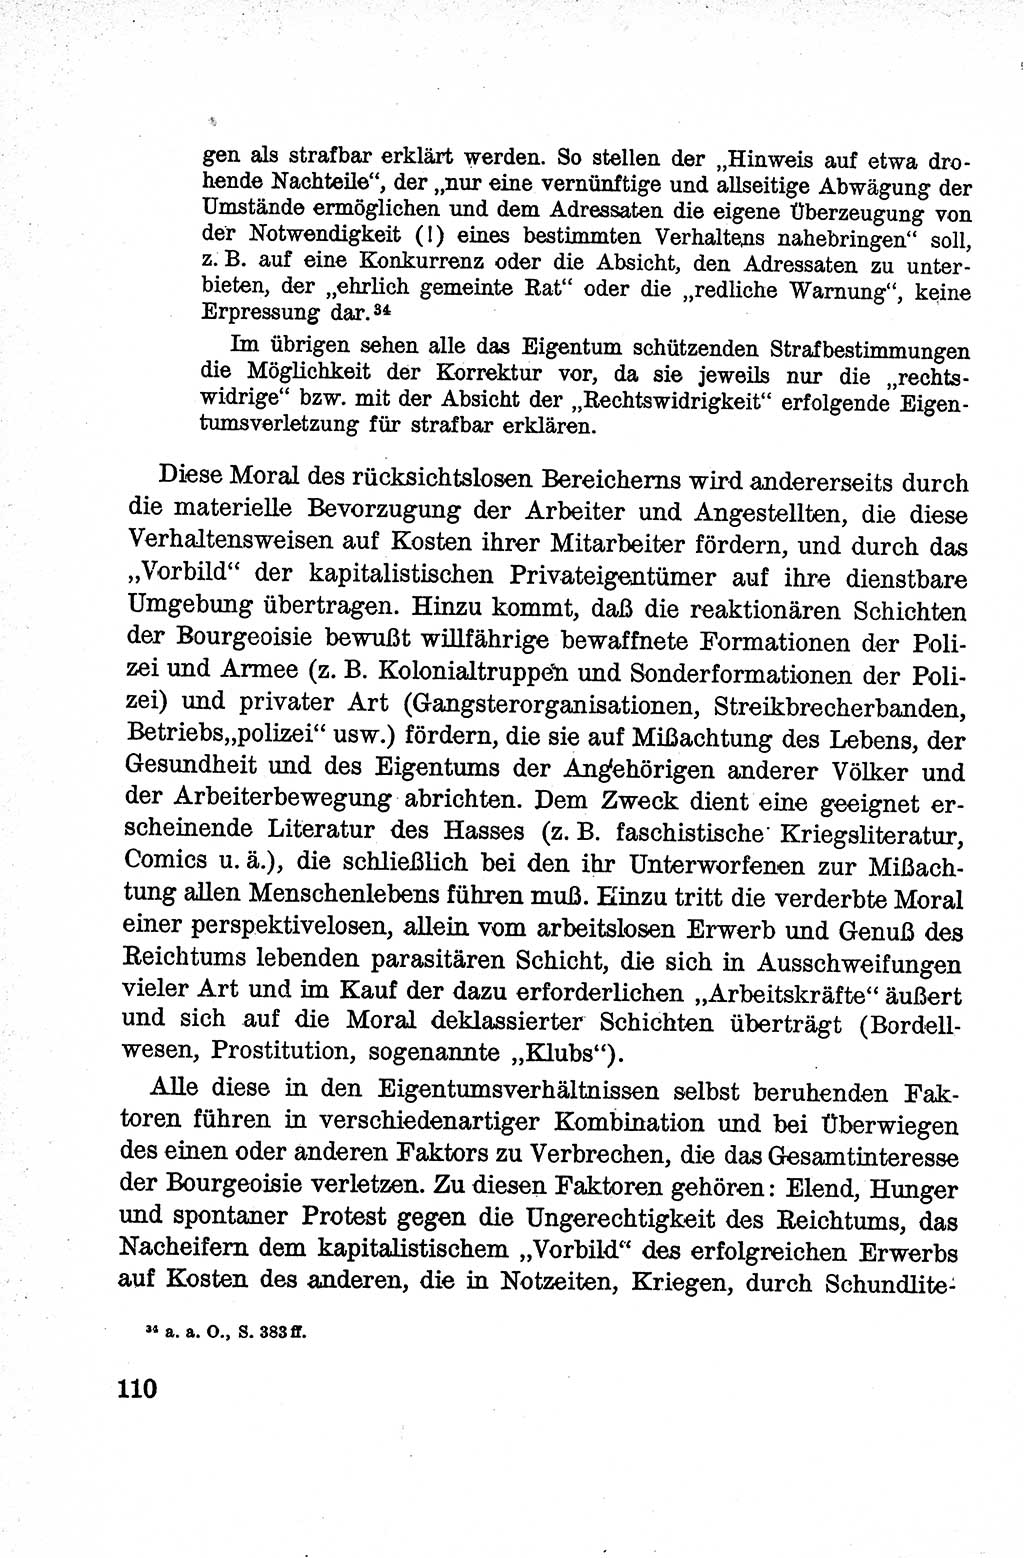 Lehrbuch des Strafrechts der Deutschen Demokratischen Republik (DDR), Allgemeiner Teil 1959, Seite 110 (Lb. Strafr. DDR AT 1959, S. 110)